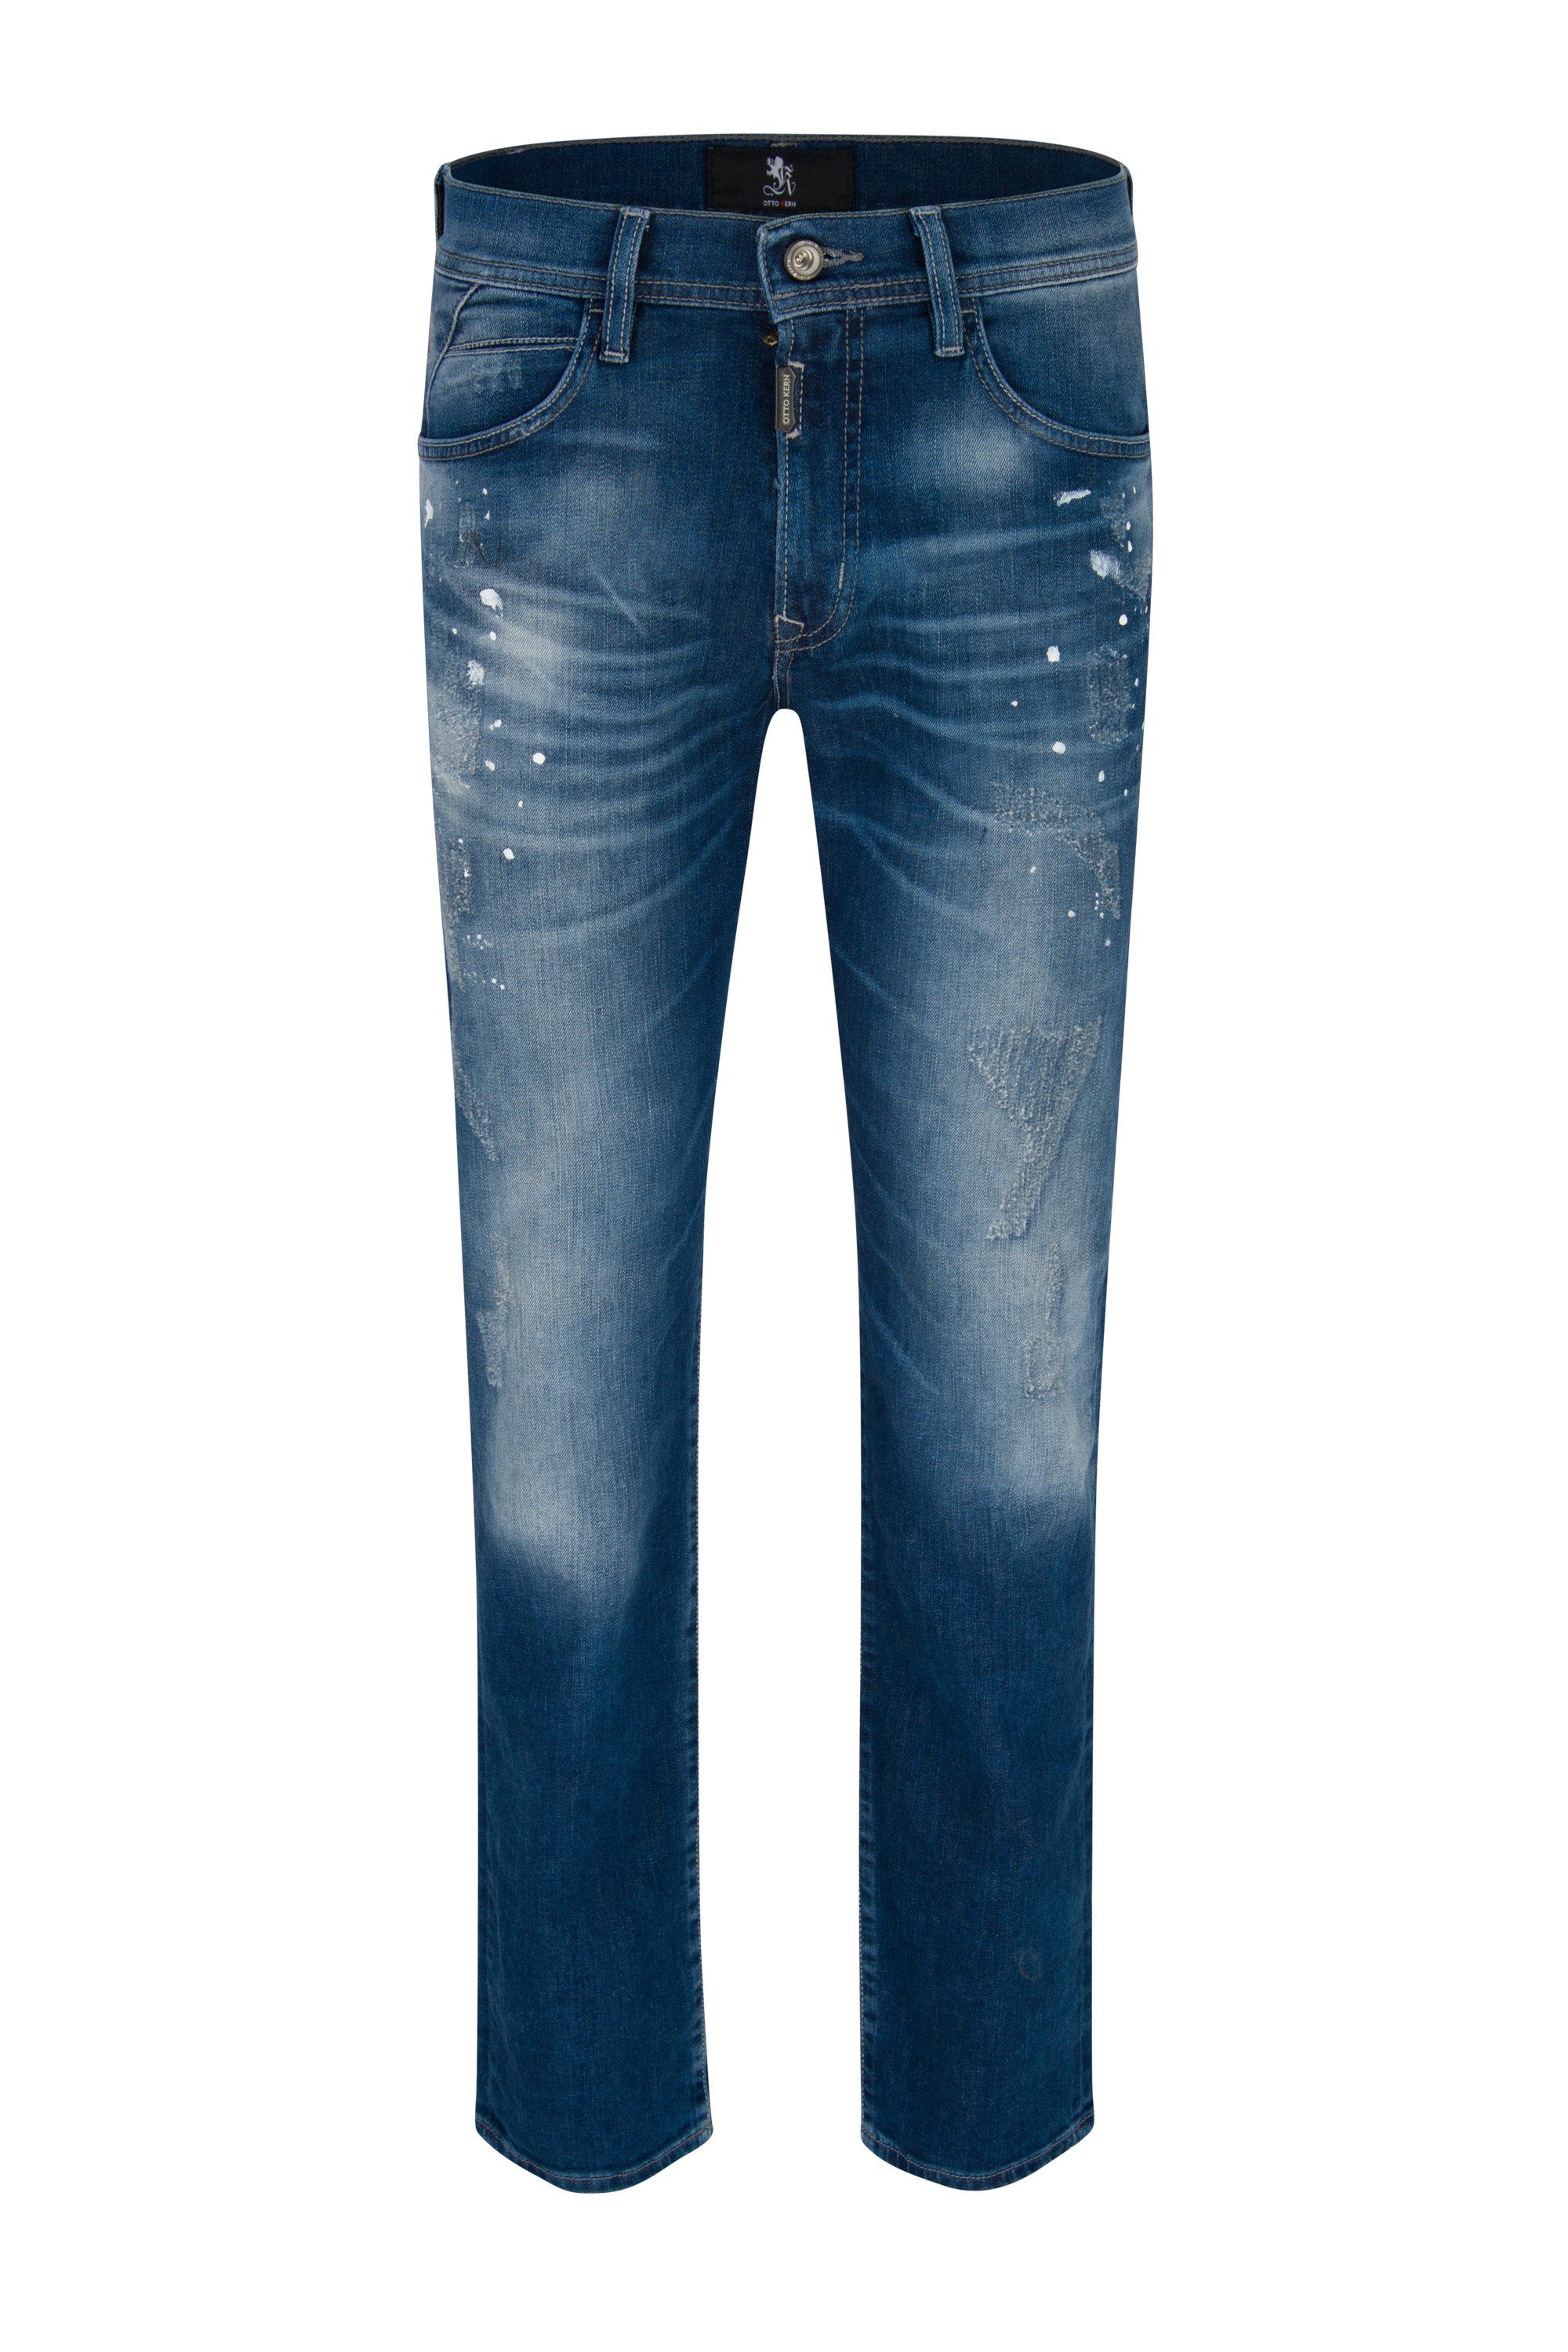 Otto Kern 5-Pocket-Jeans OTTO KERN OK 03 blue fashion 67023 6213.6827